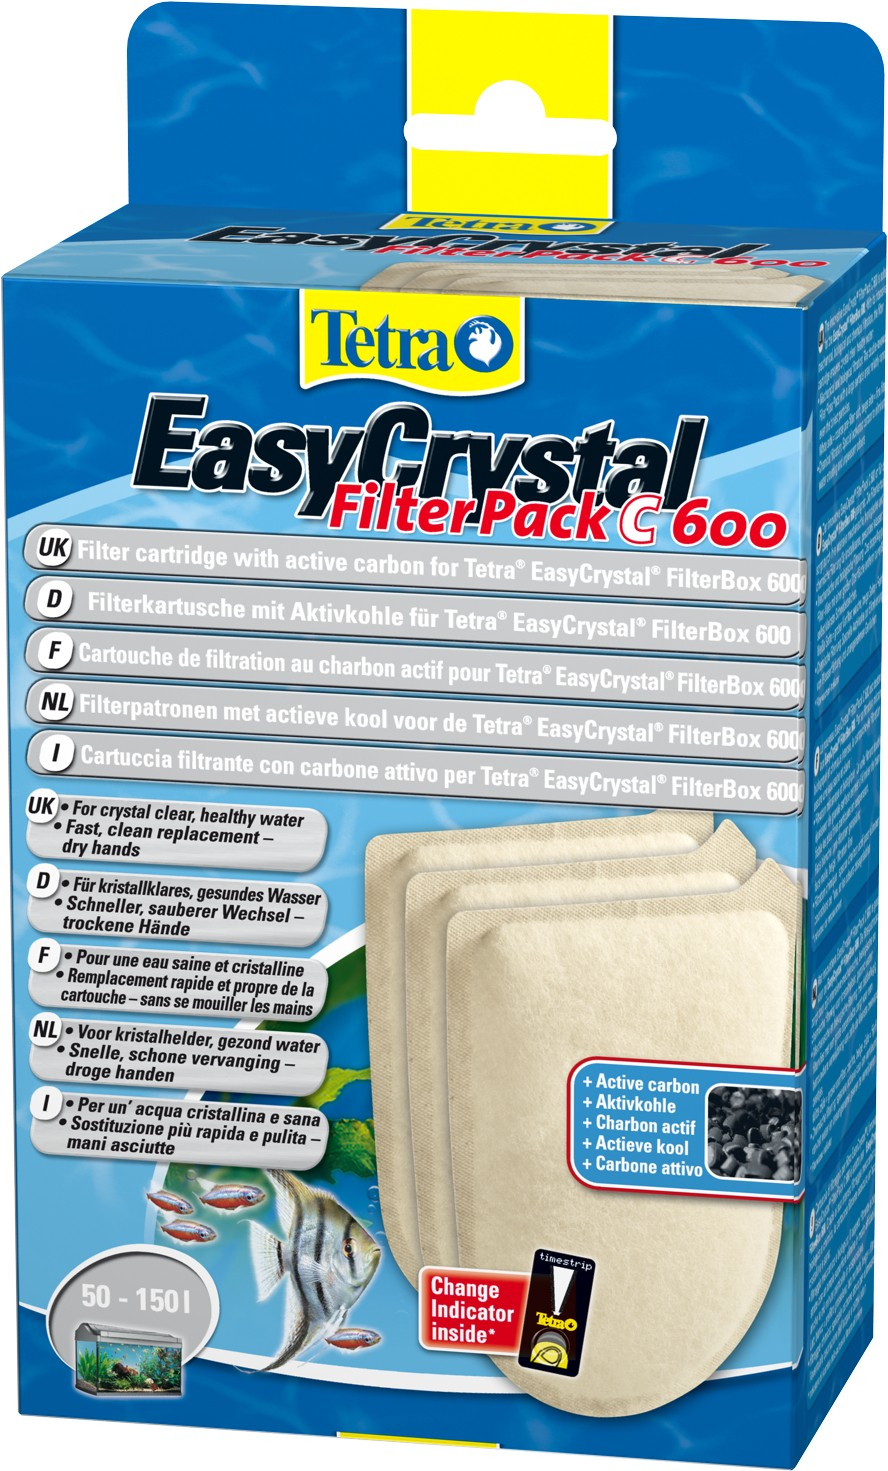 Tetra EasyCrystal Filter Pack C600 mit Aktivkohle